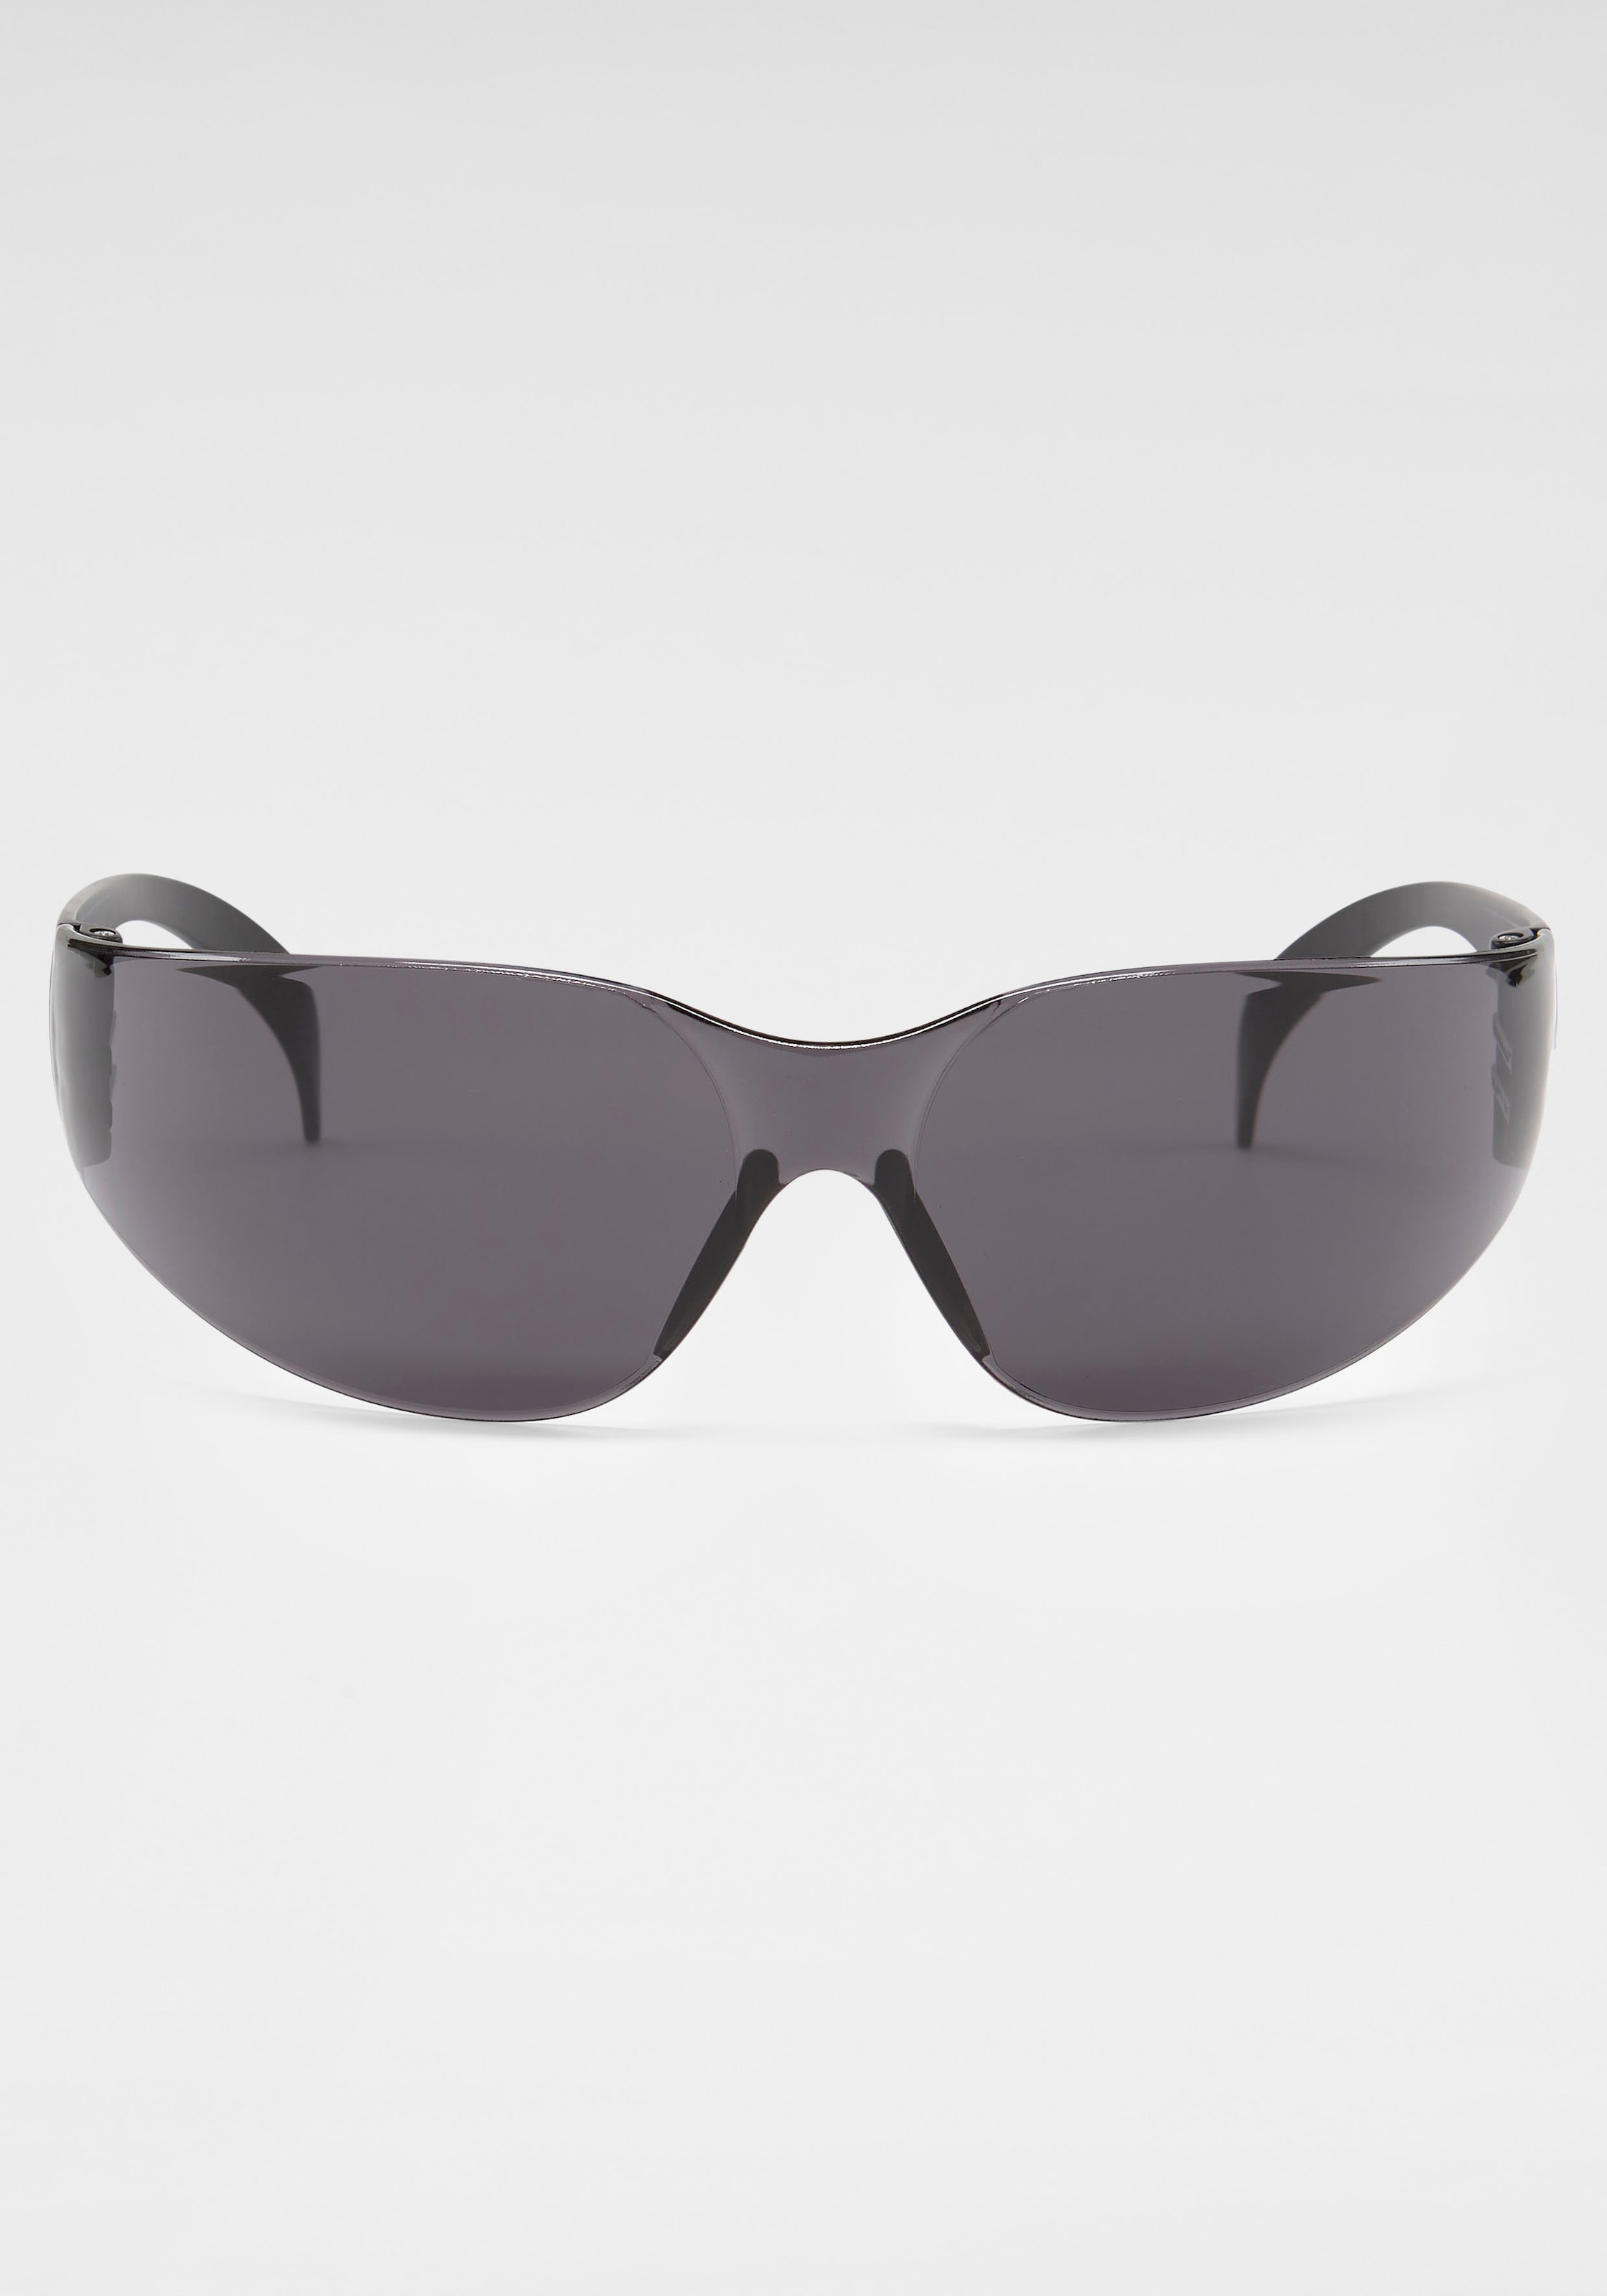 IN OTTO online Eyewear Randlos shoppen Sonnenbrille, bei BLACK BACK